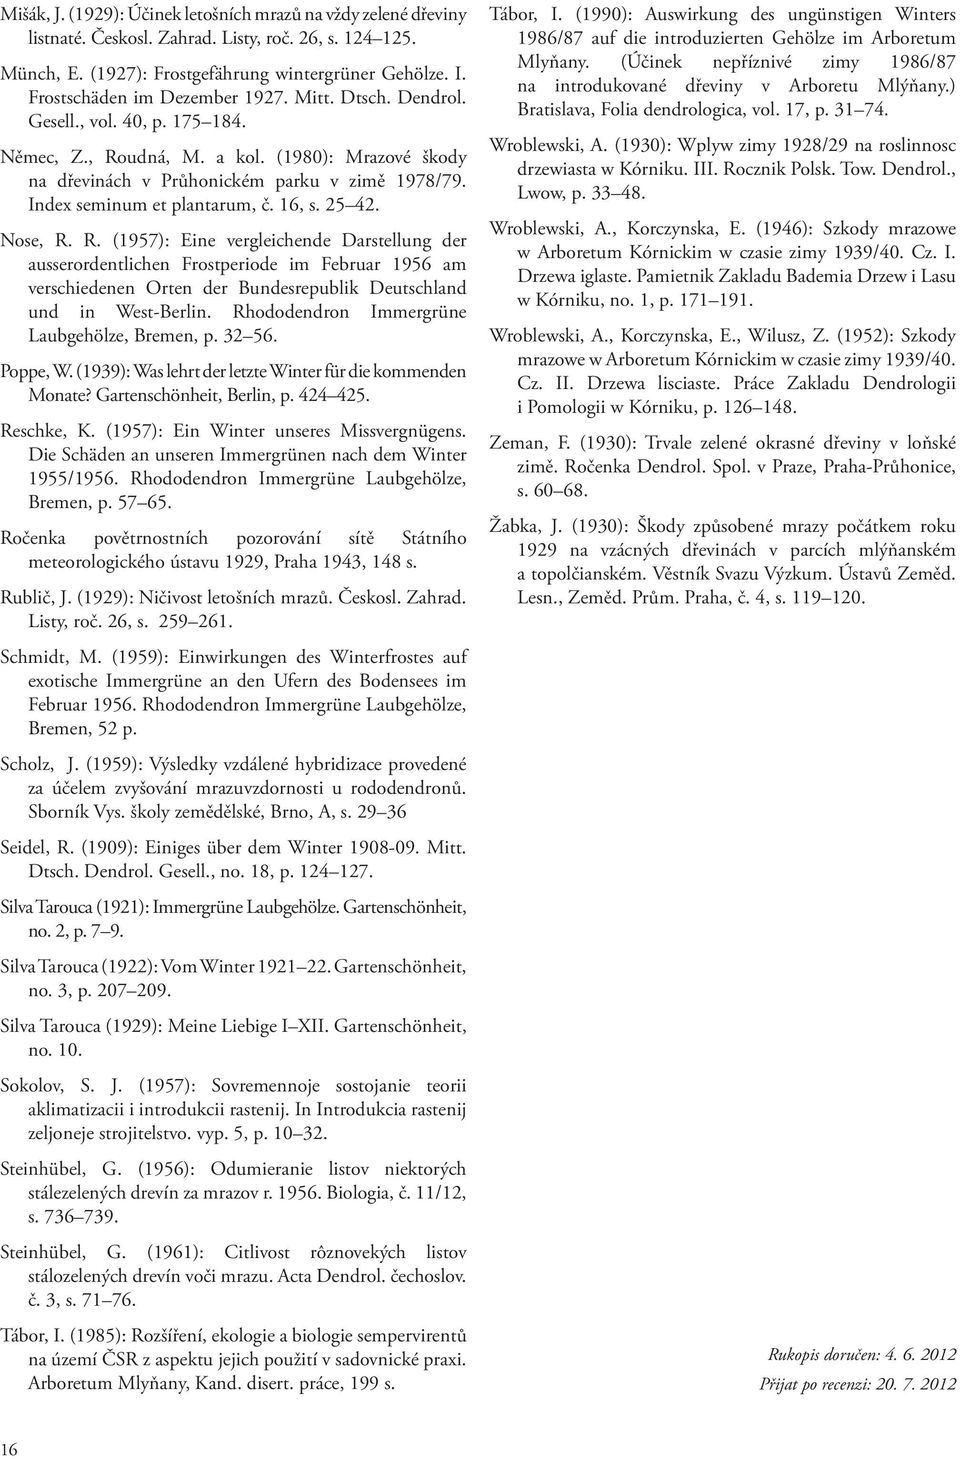 Index seminum et plantarum, č. 16, s. 25 42. Nose, R.